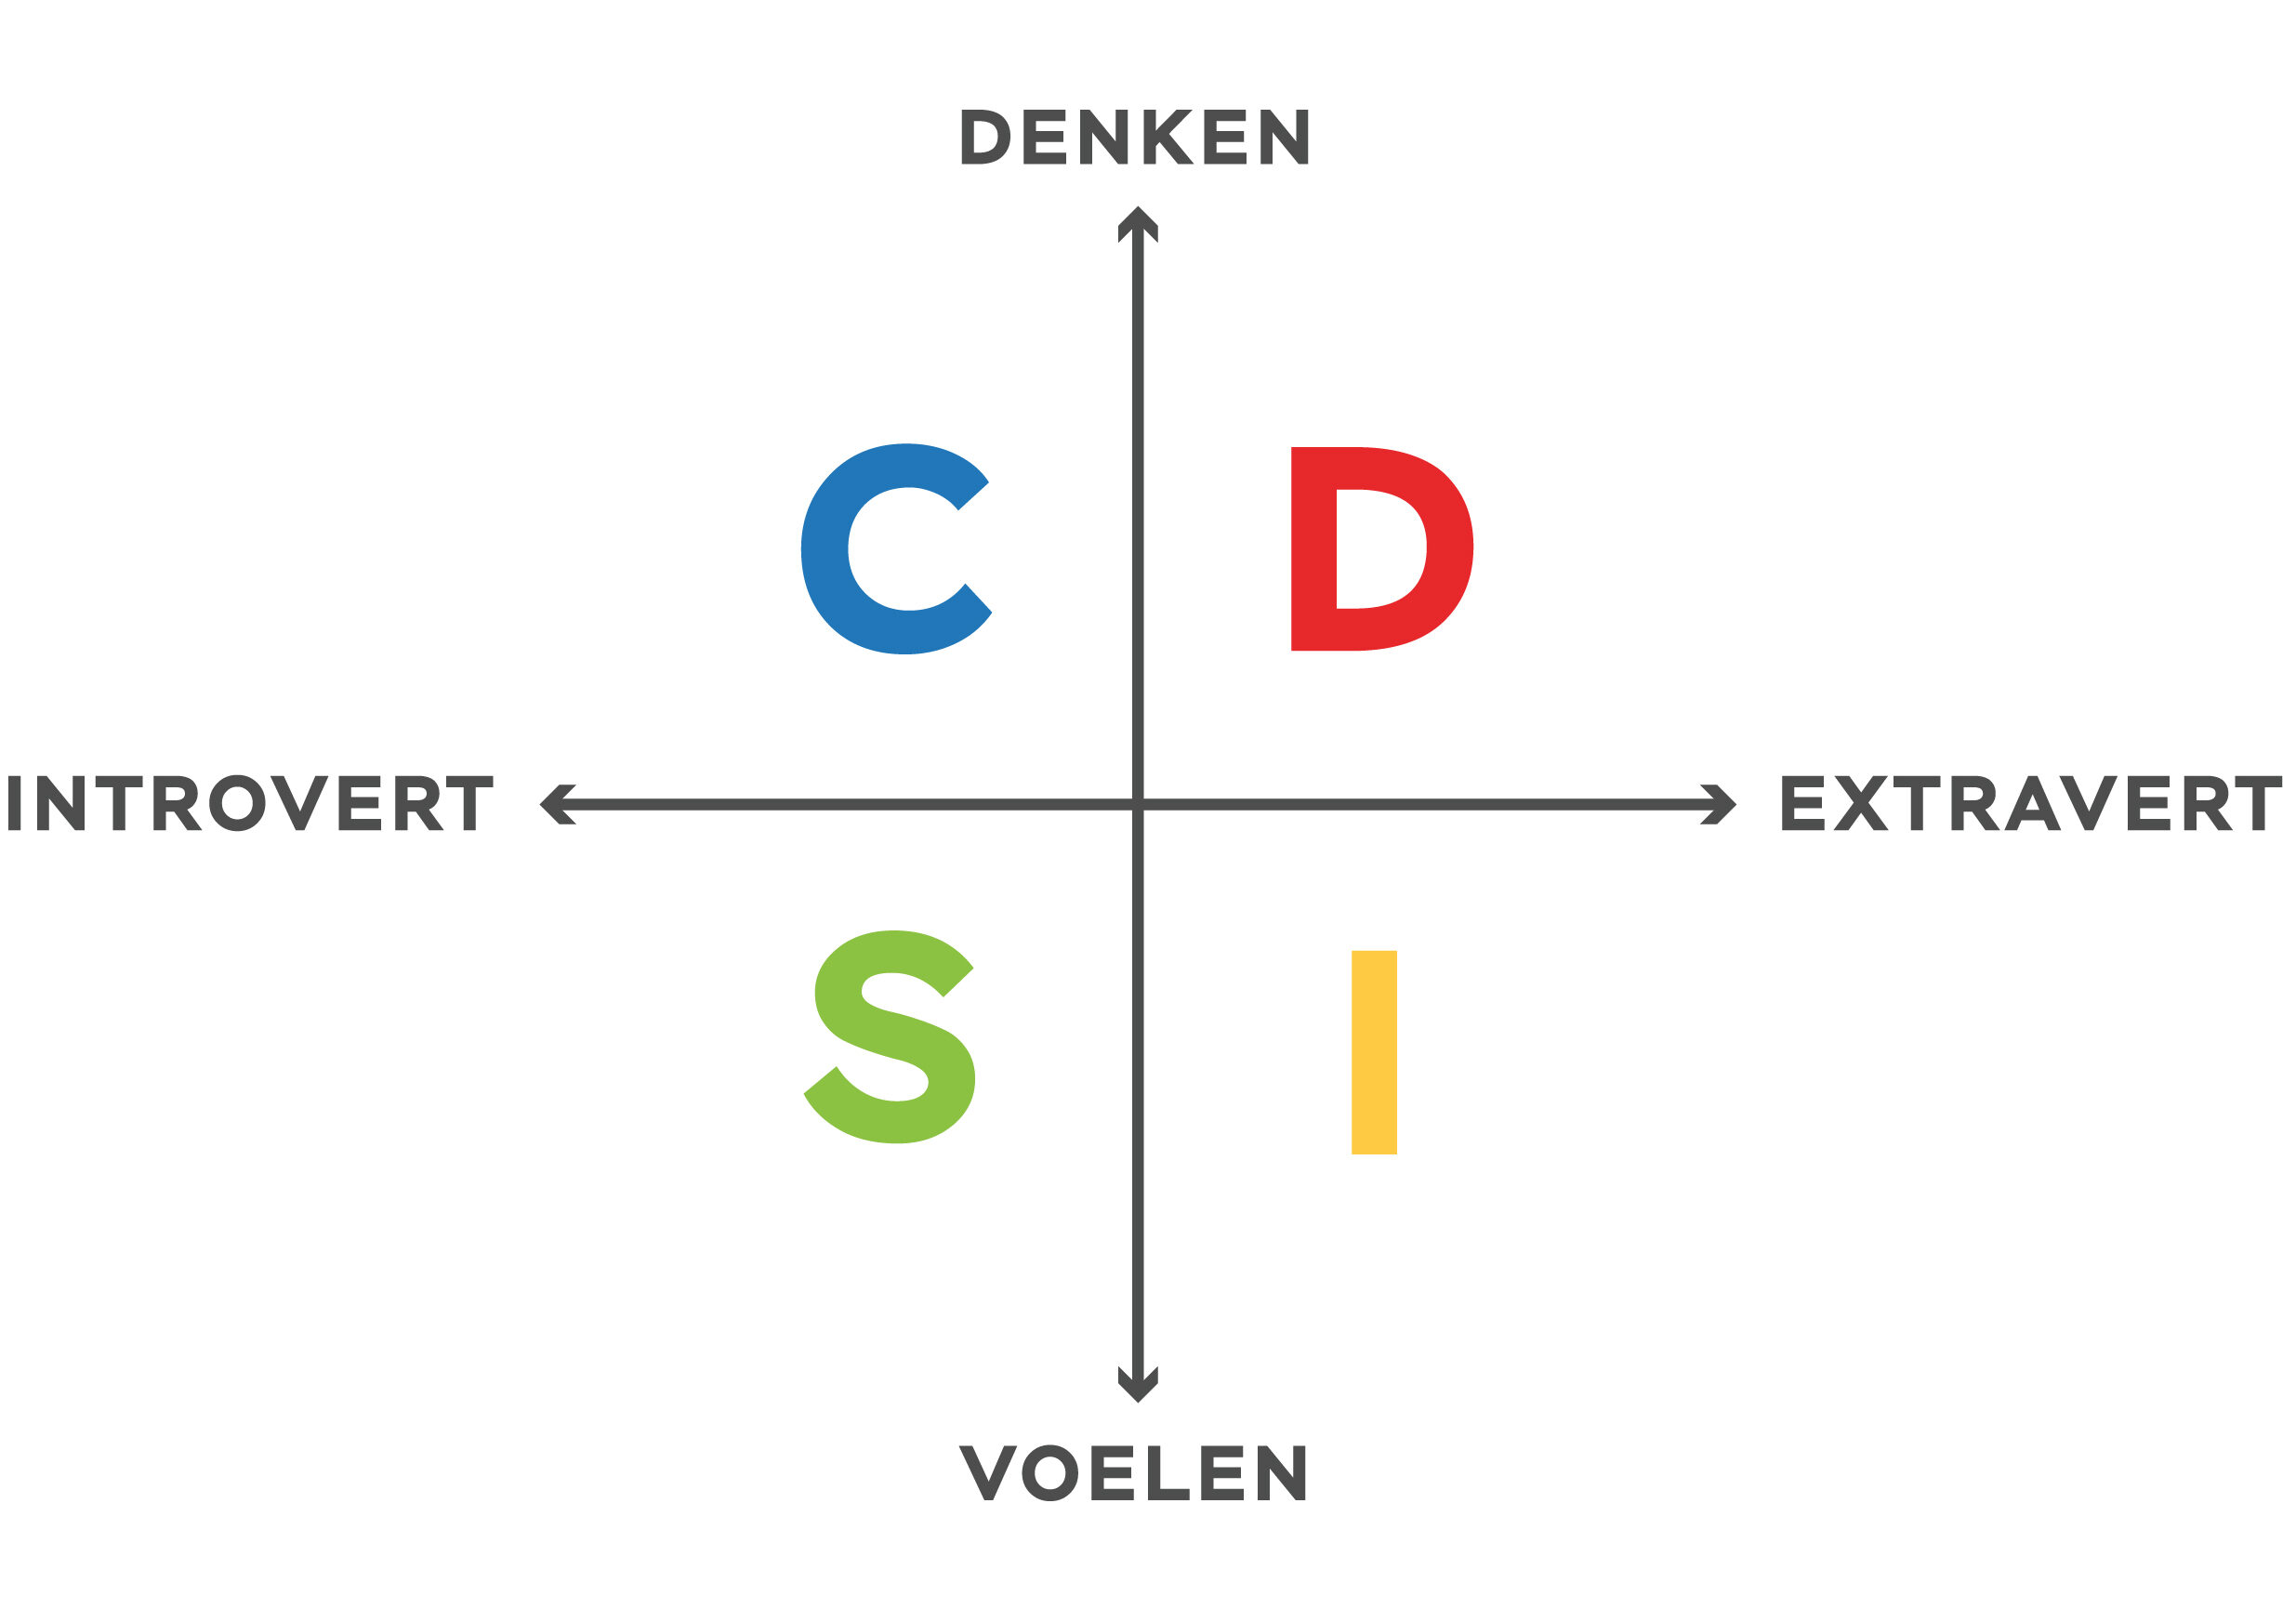 DISC gedragsstijlen kwadrant op basis van Dr. Carl Gustav Jung en Dr. William Moulton Marston